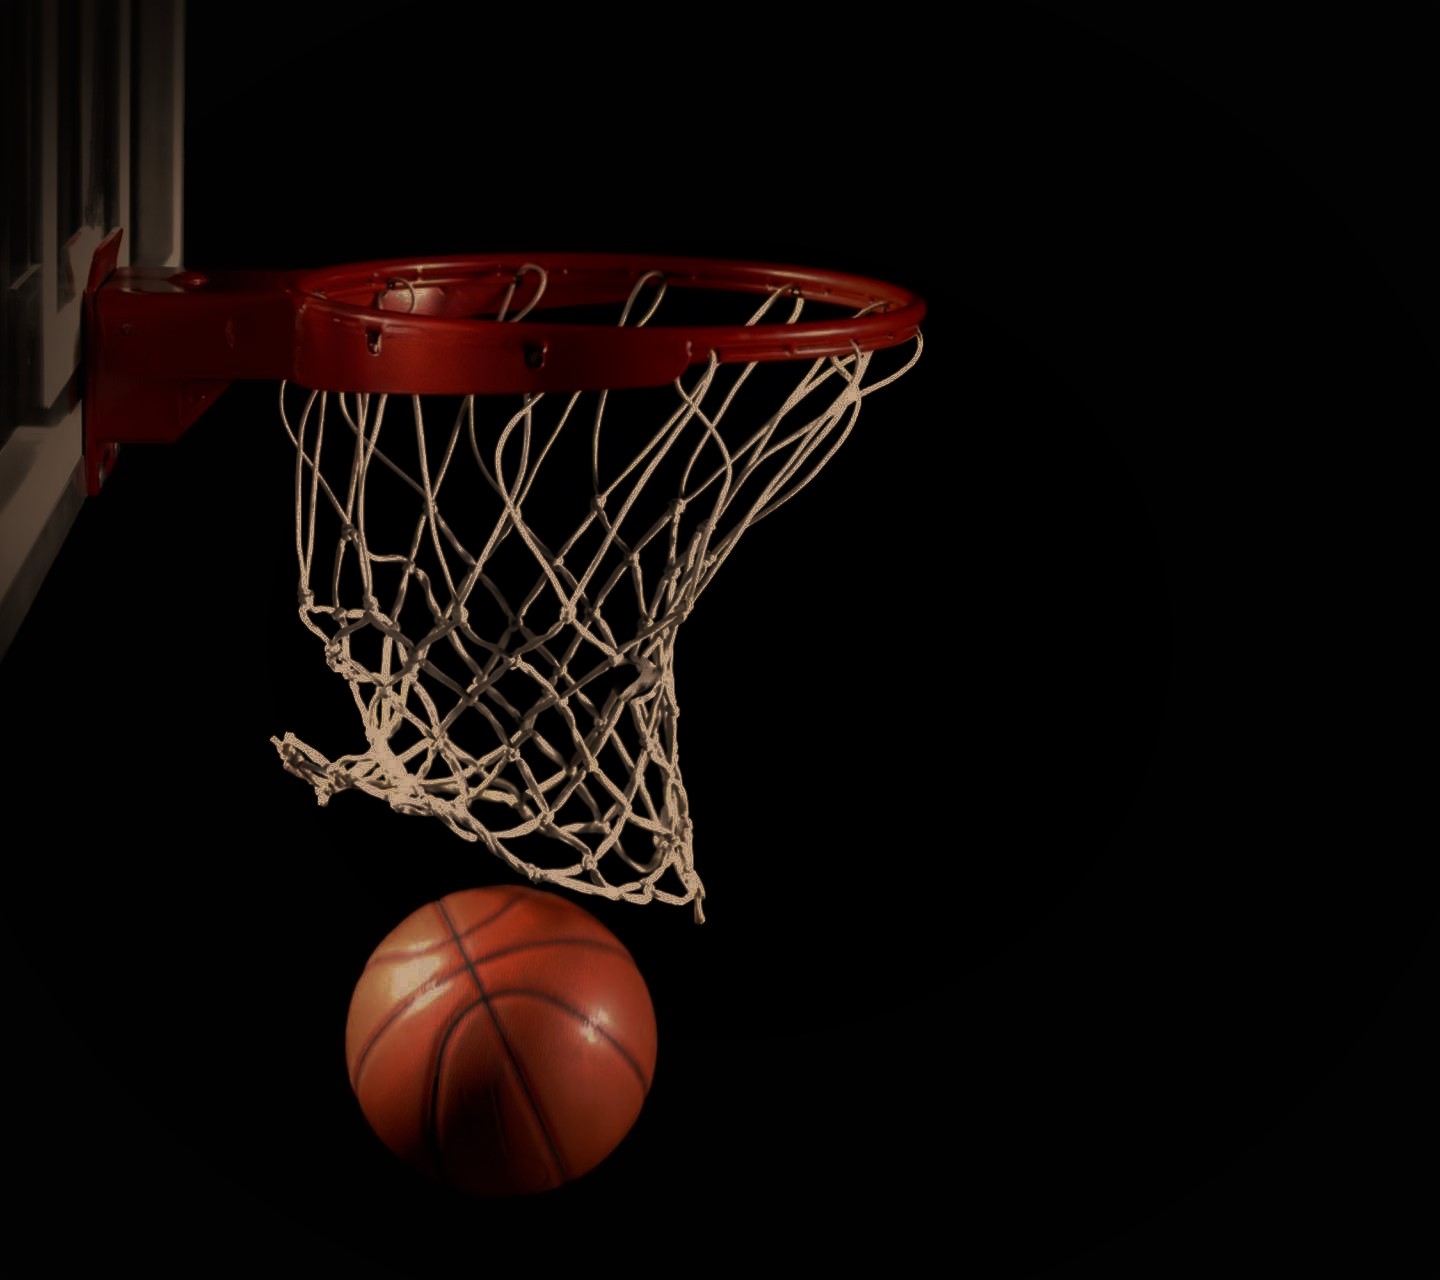 General 1440x1280 basketball hoop dark ball black simple background